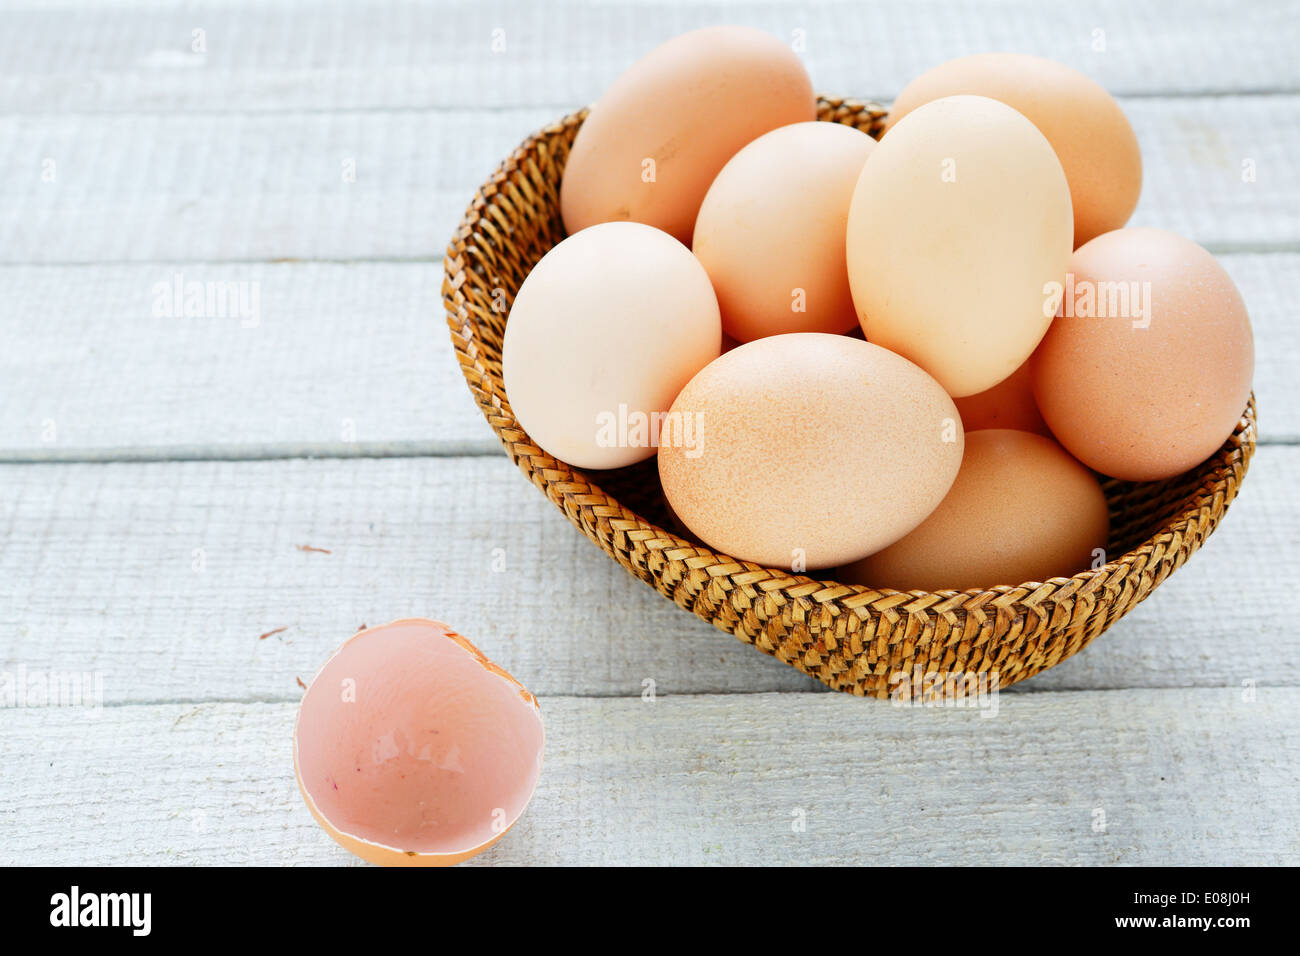 Десять яиц в день. Всемирный день яйца в Вене картинка. Что за Дата на яйцах.